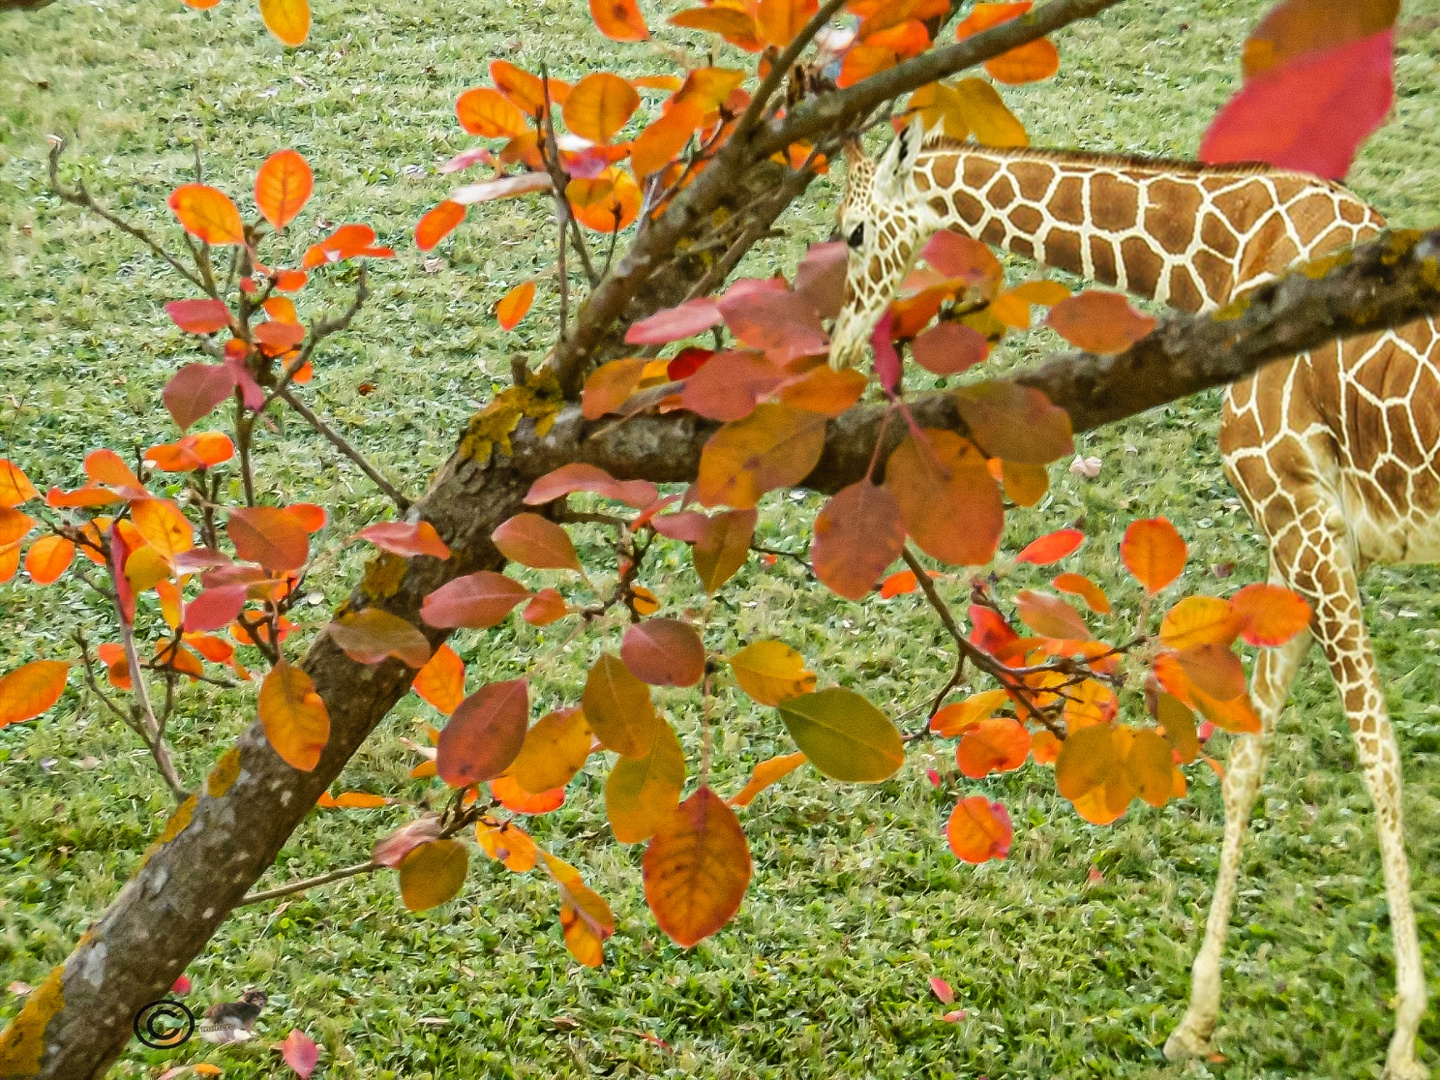 Giraffe "Muss doch mal diese Art von Blättern probieren"